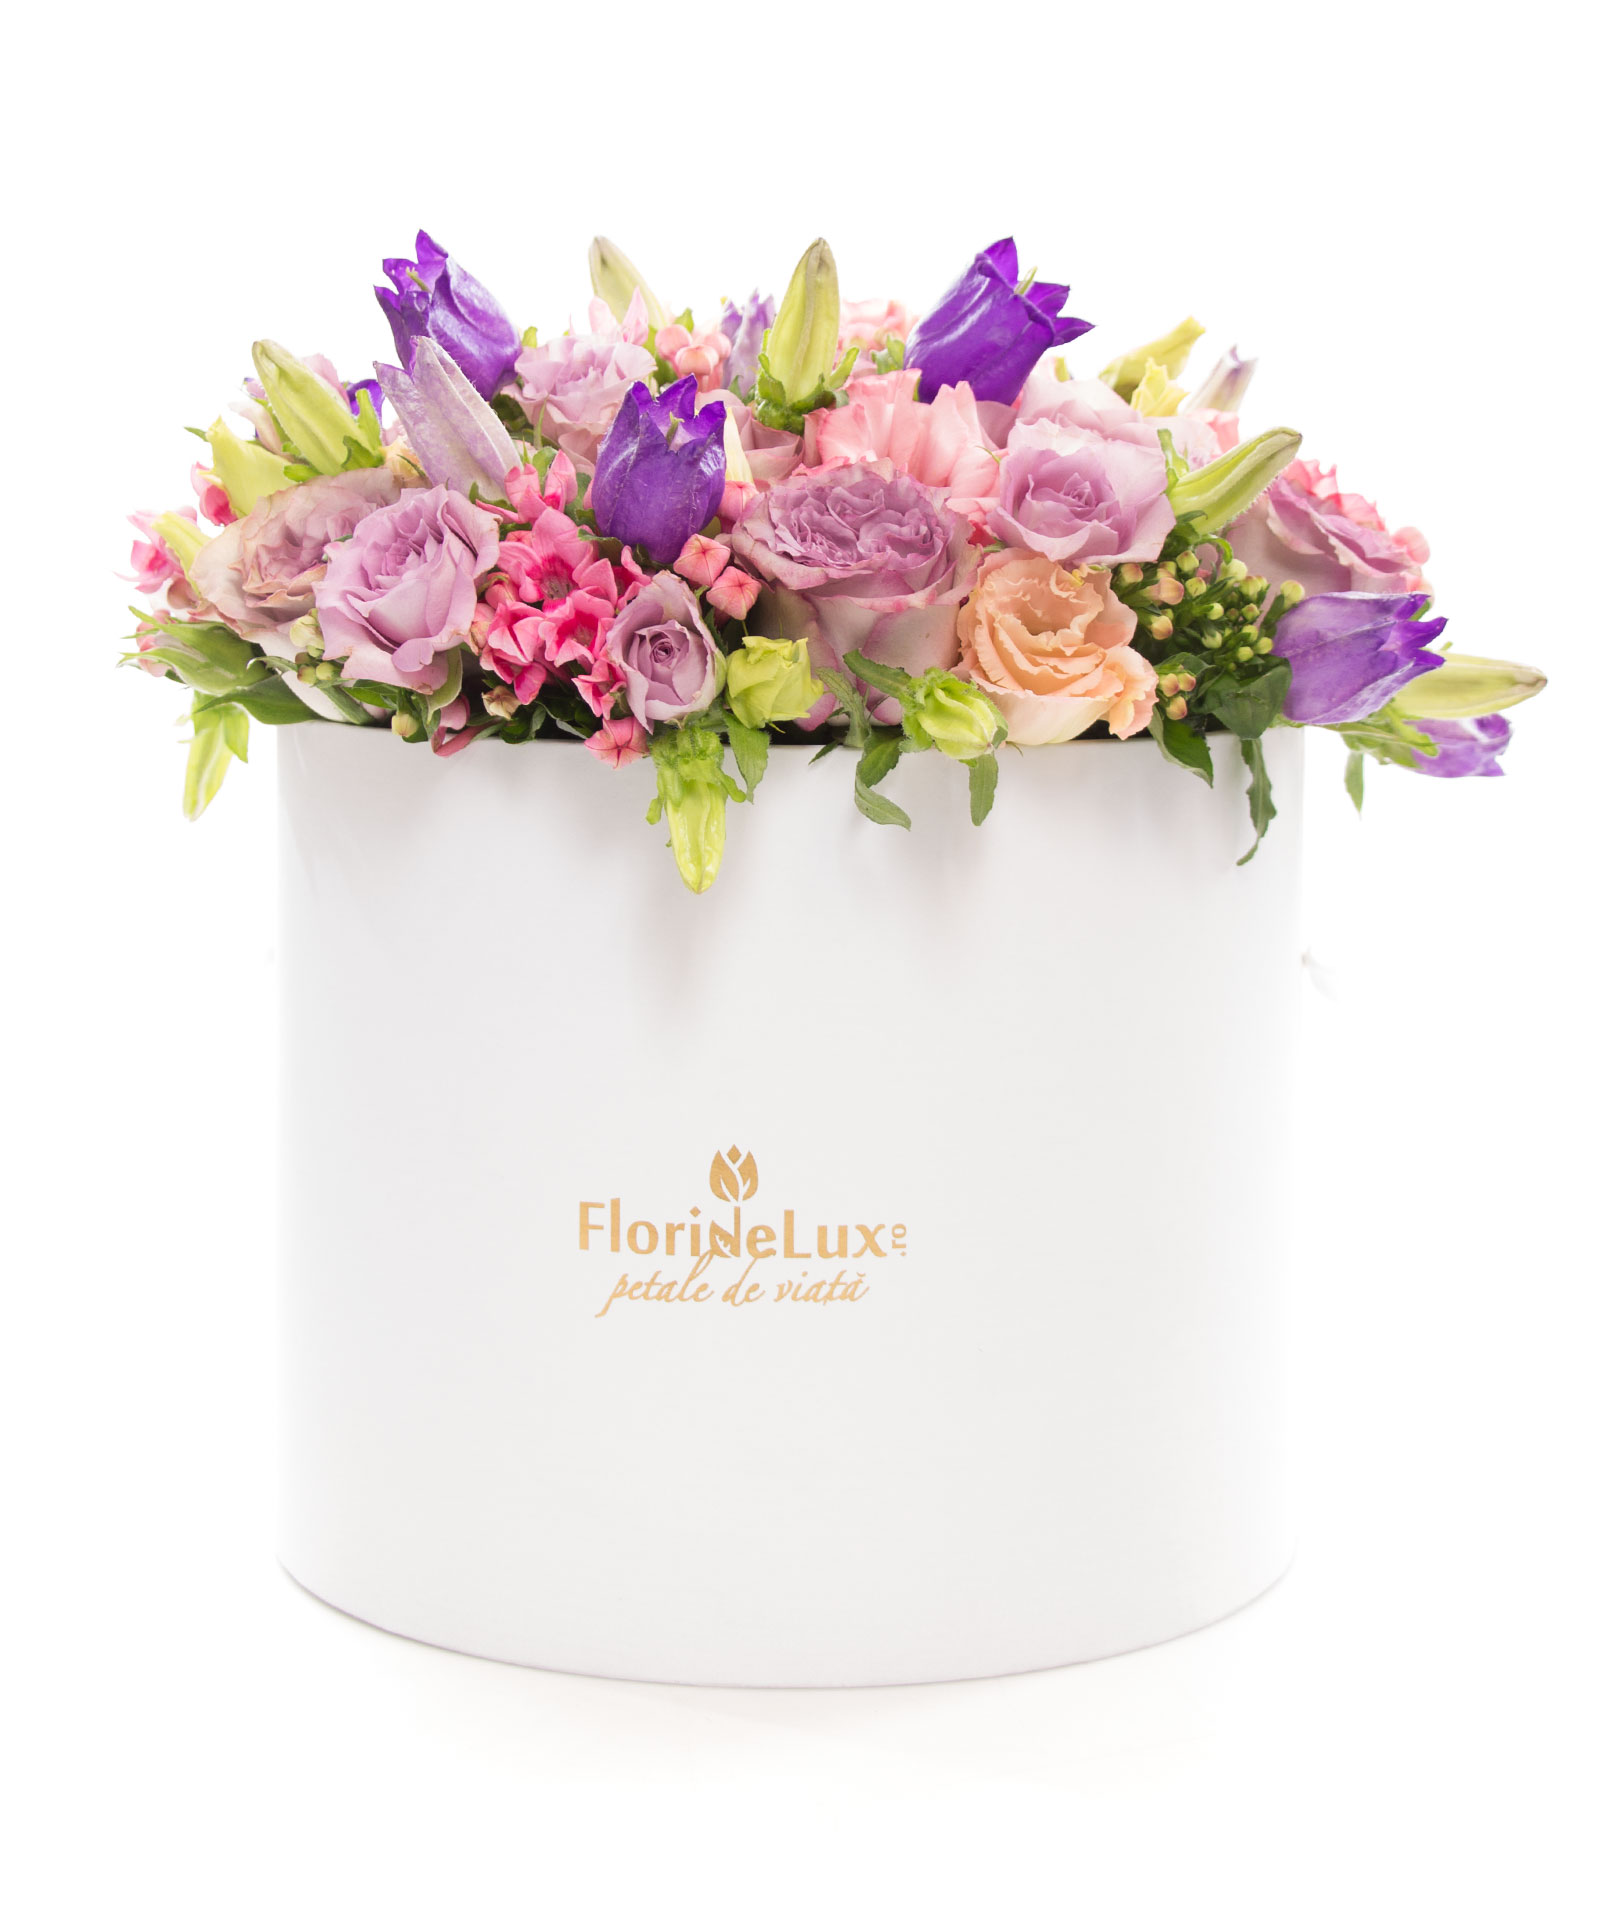 Cutie magnifica cu flori multicolore si Corton Charlemagne